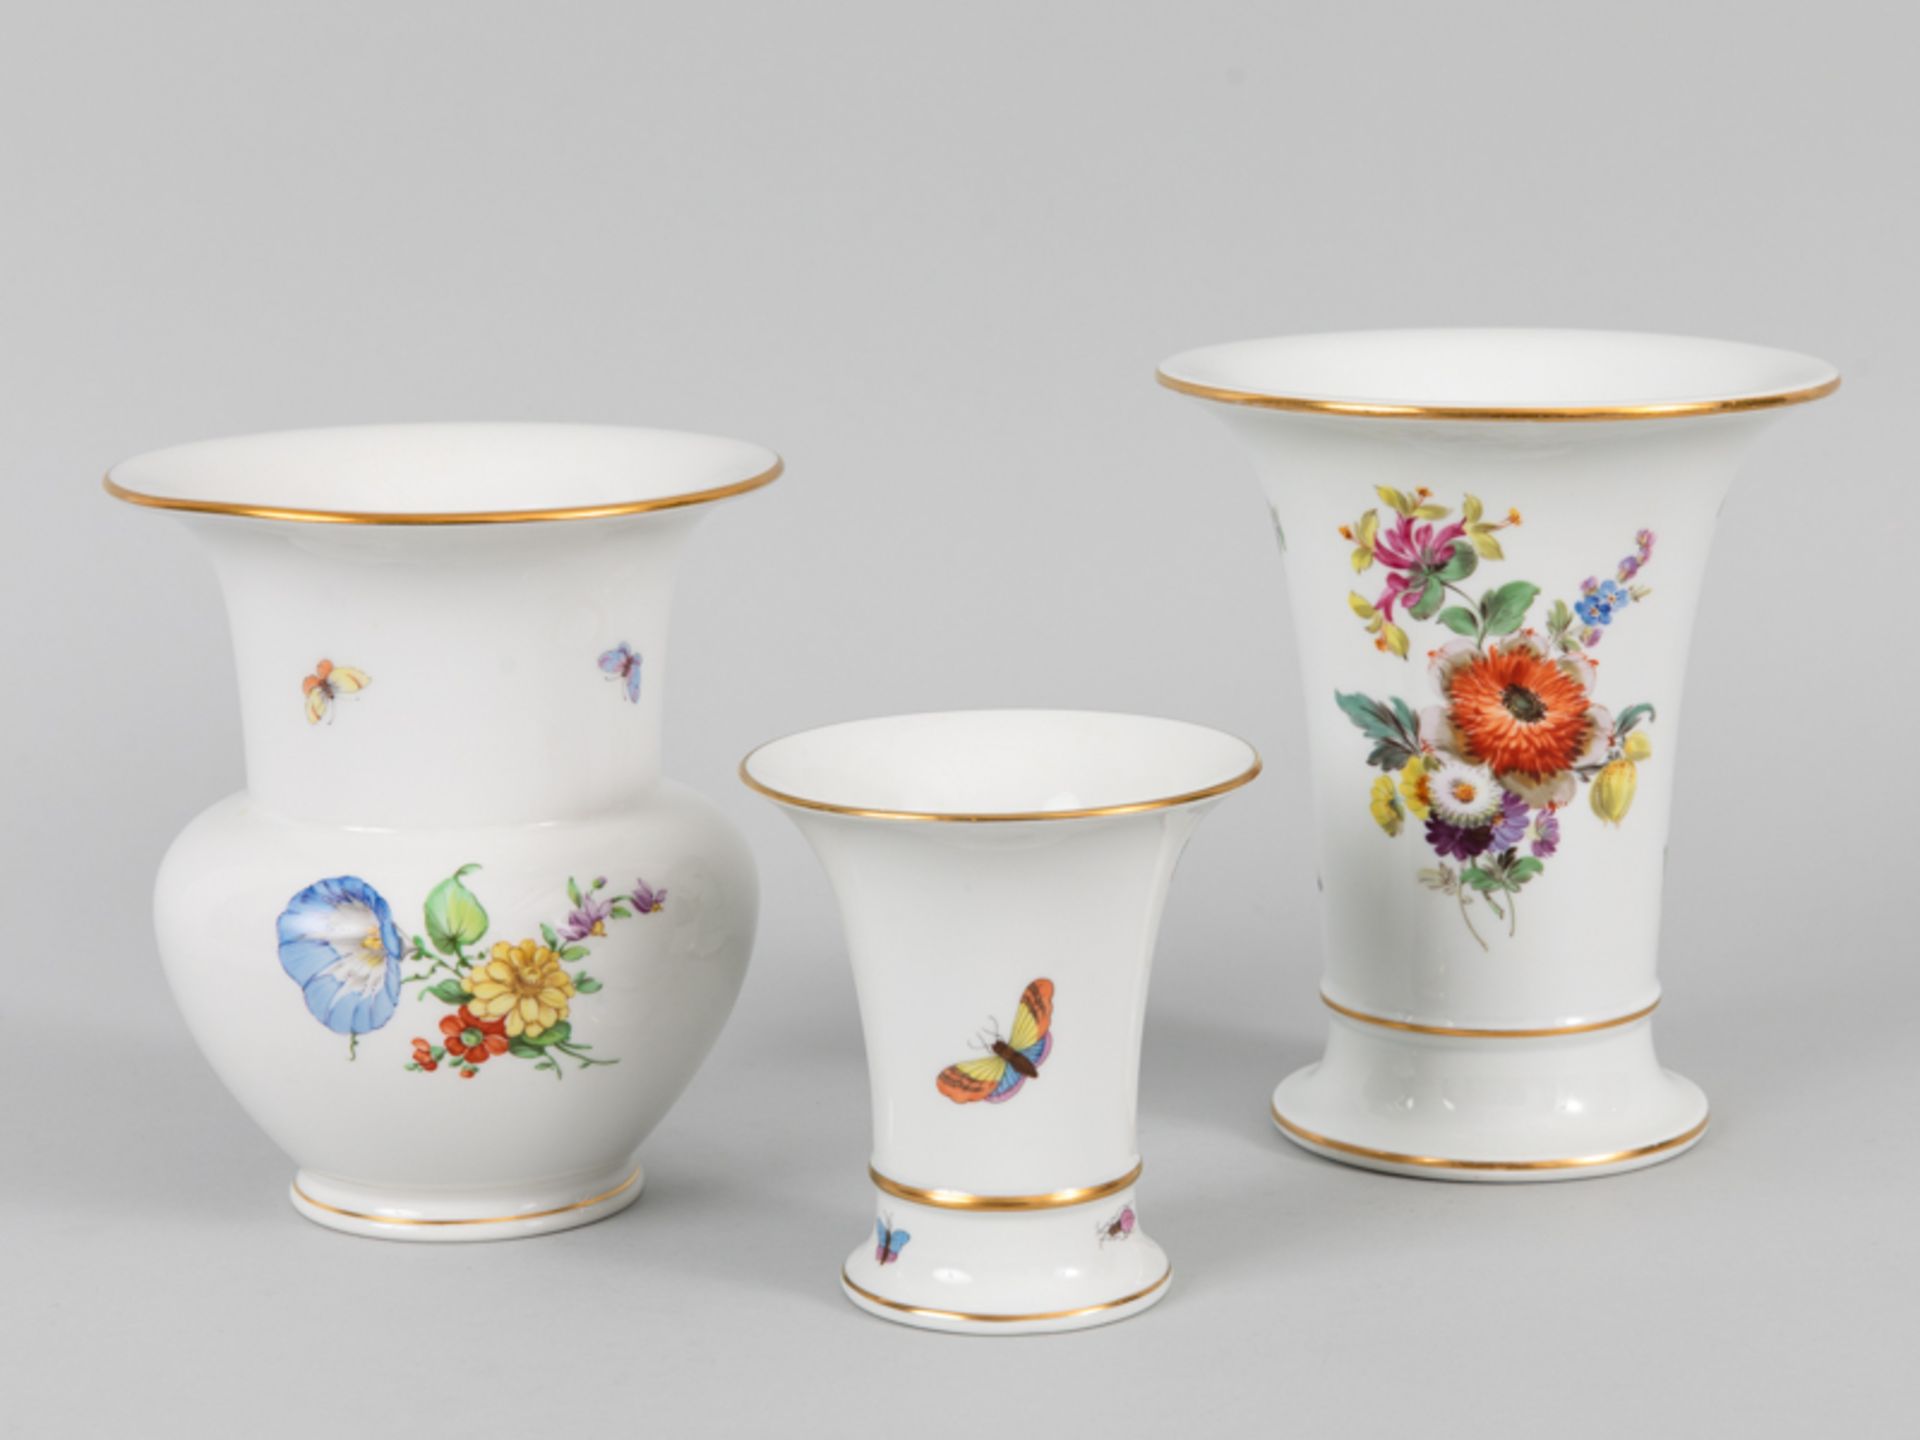 3 Vasen mit Blumenmalerei, Meissen, Herend, KPM Berlin, Ausführung 20. Jh. - Bild 3 aus 4